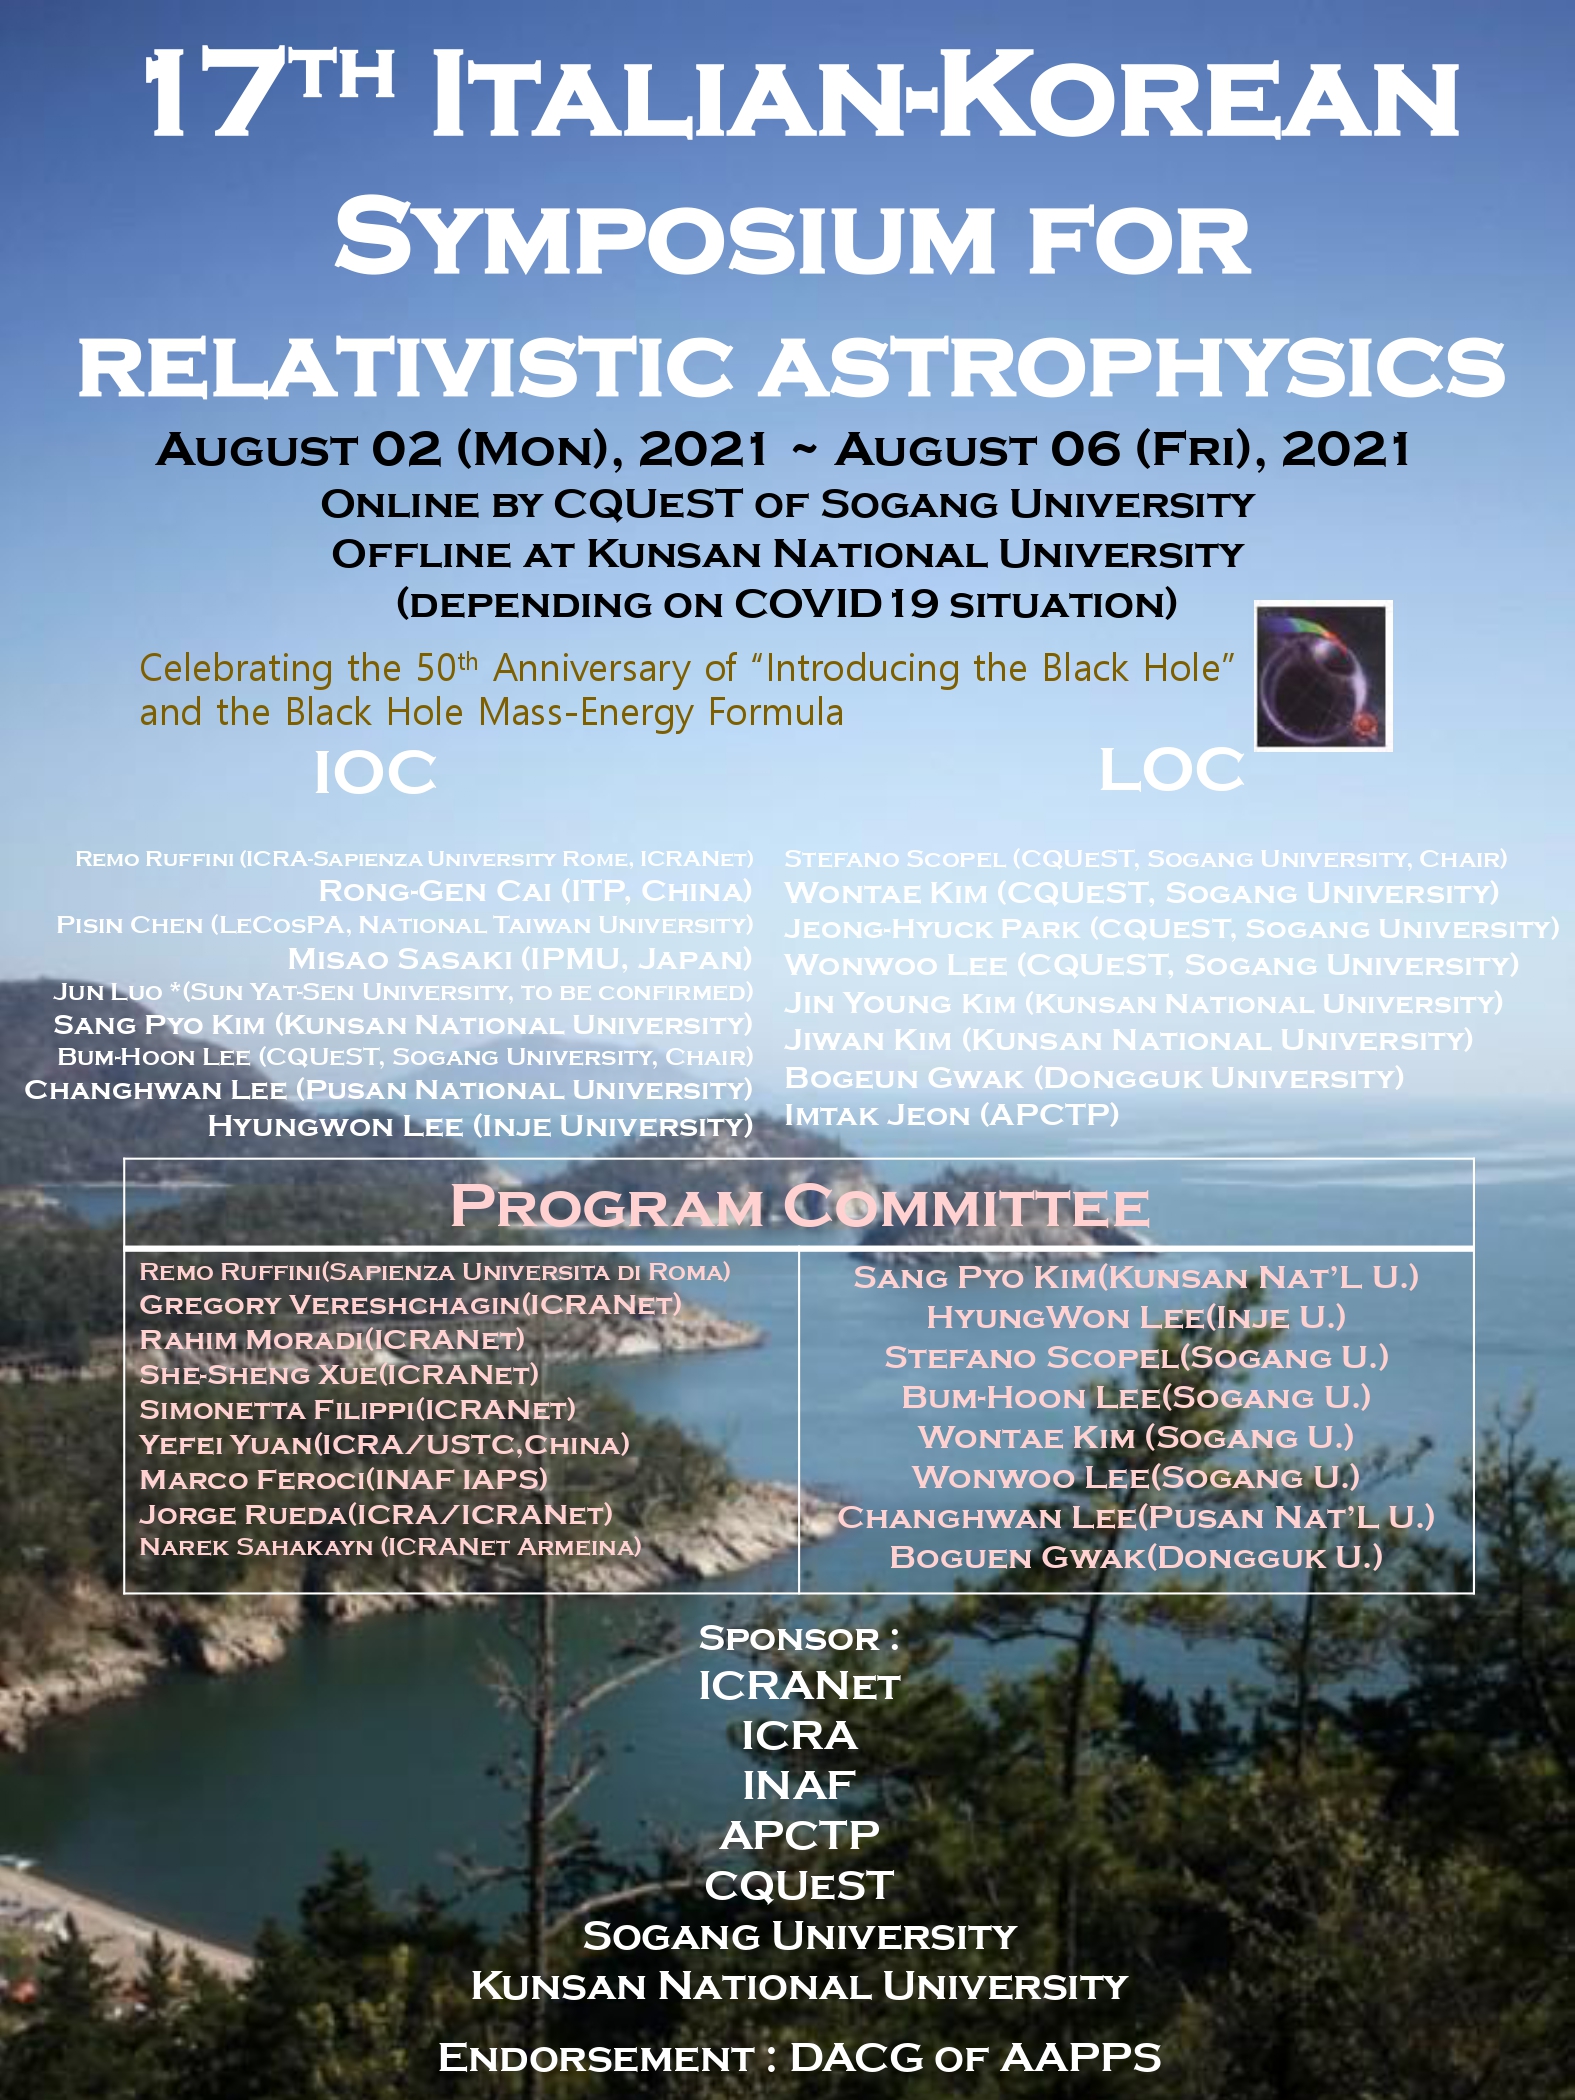 [기타] 17th ITALIAN-KOREAN SYMPOSIUM FOR RELATIVISTIC ASTROPHYSICS 이미지(1)